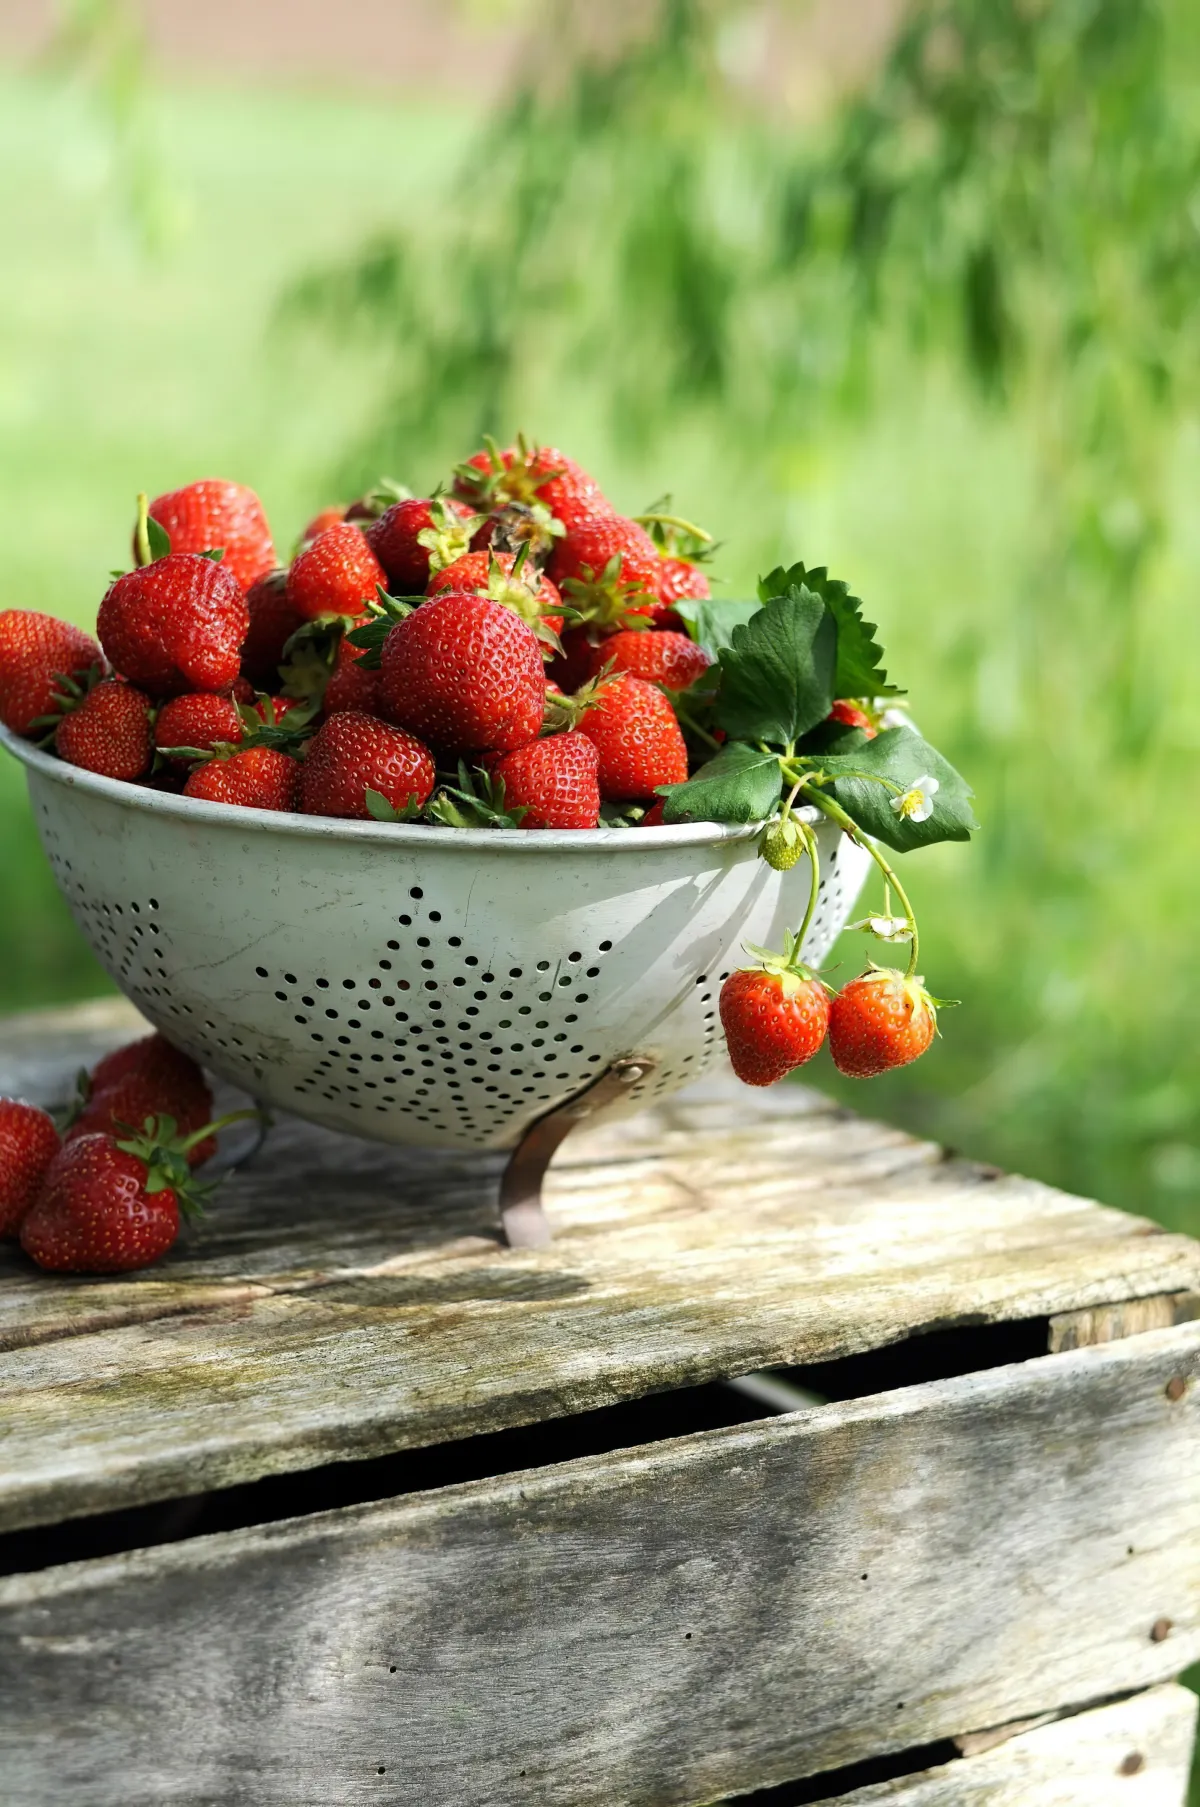 comment faire pour doubler la recolte de fraises